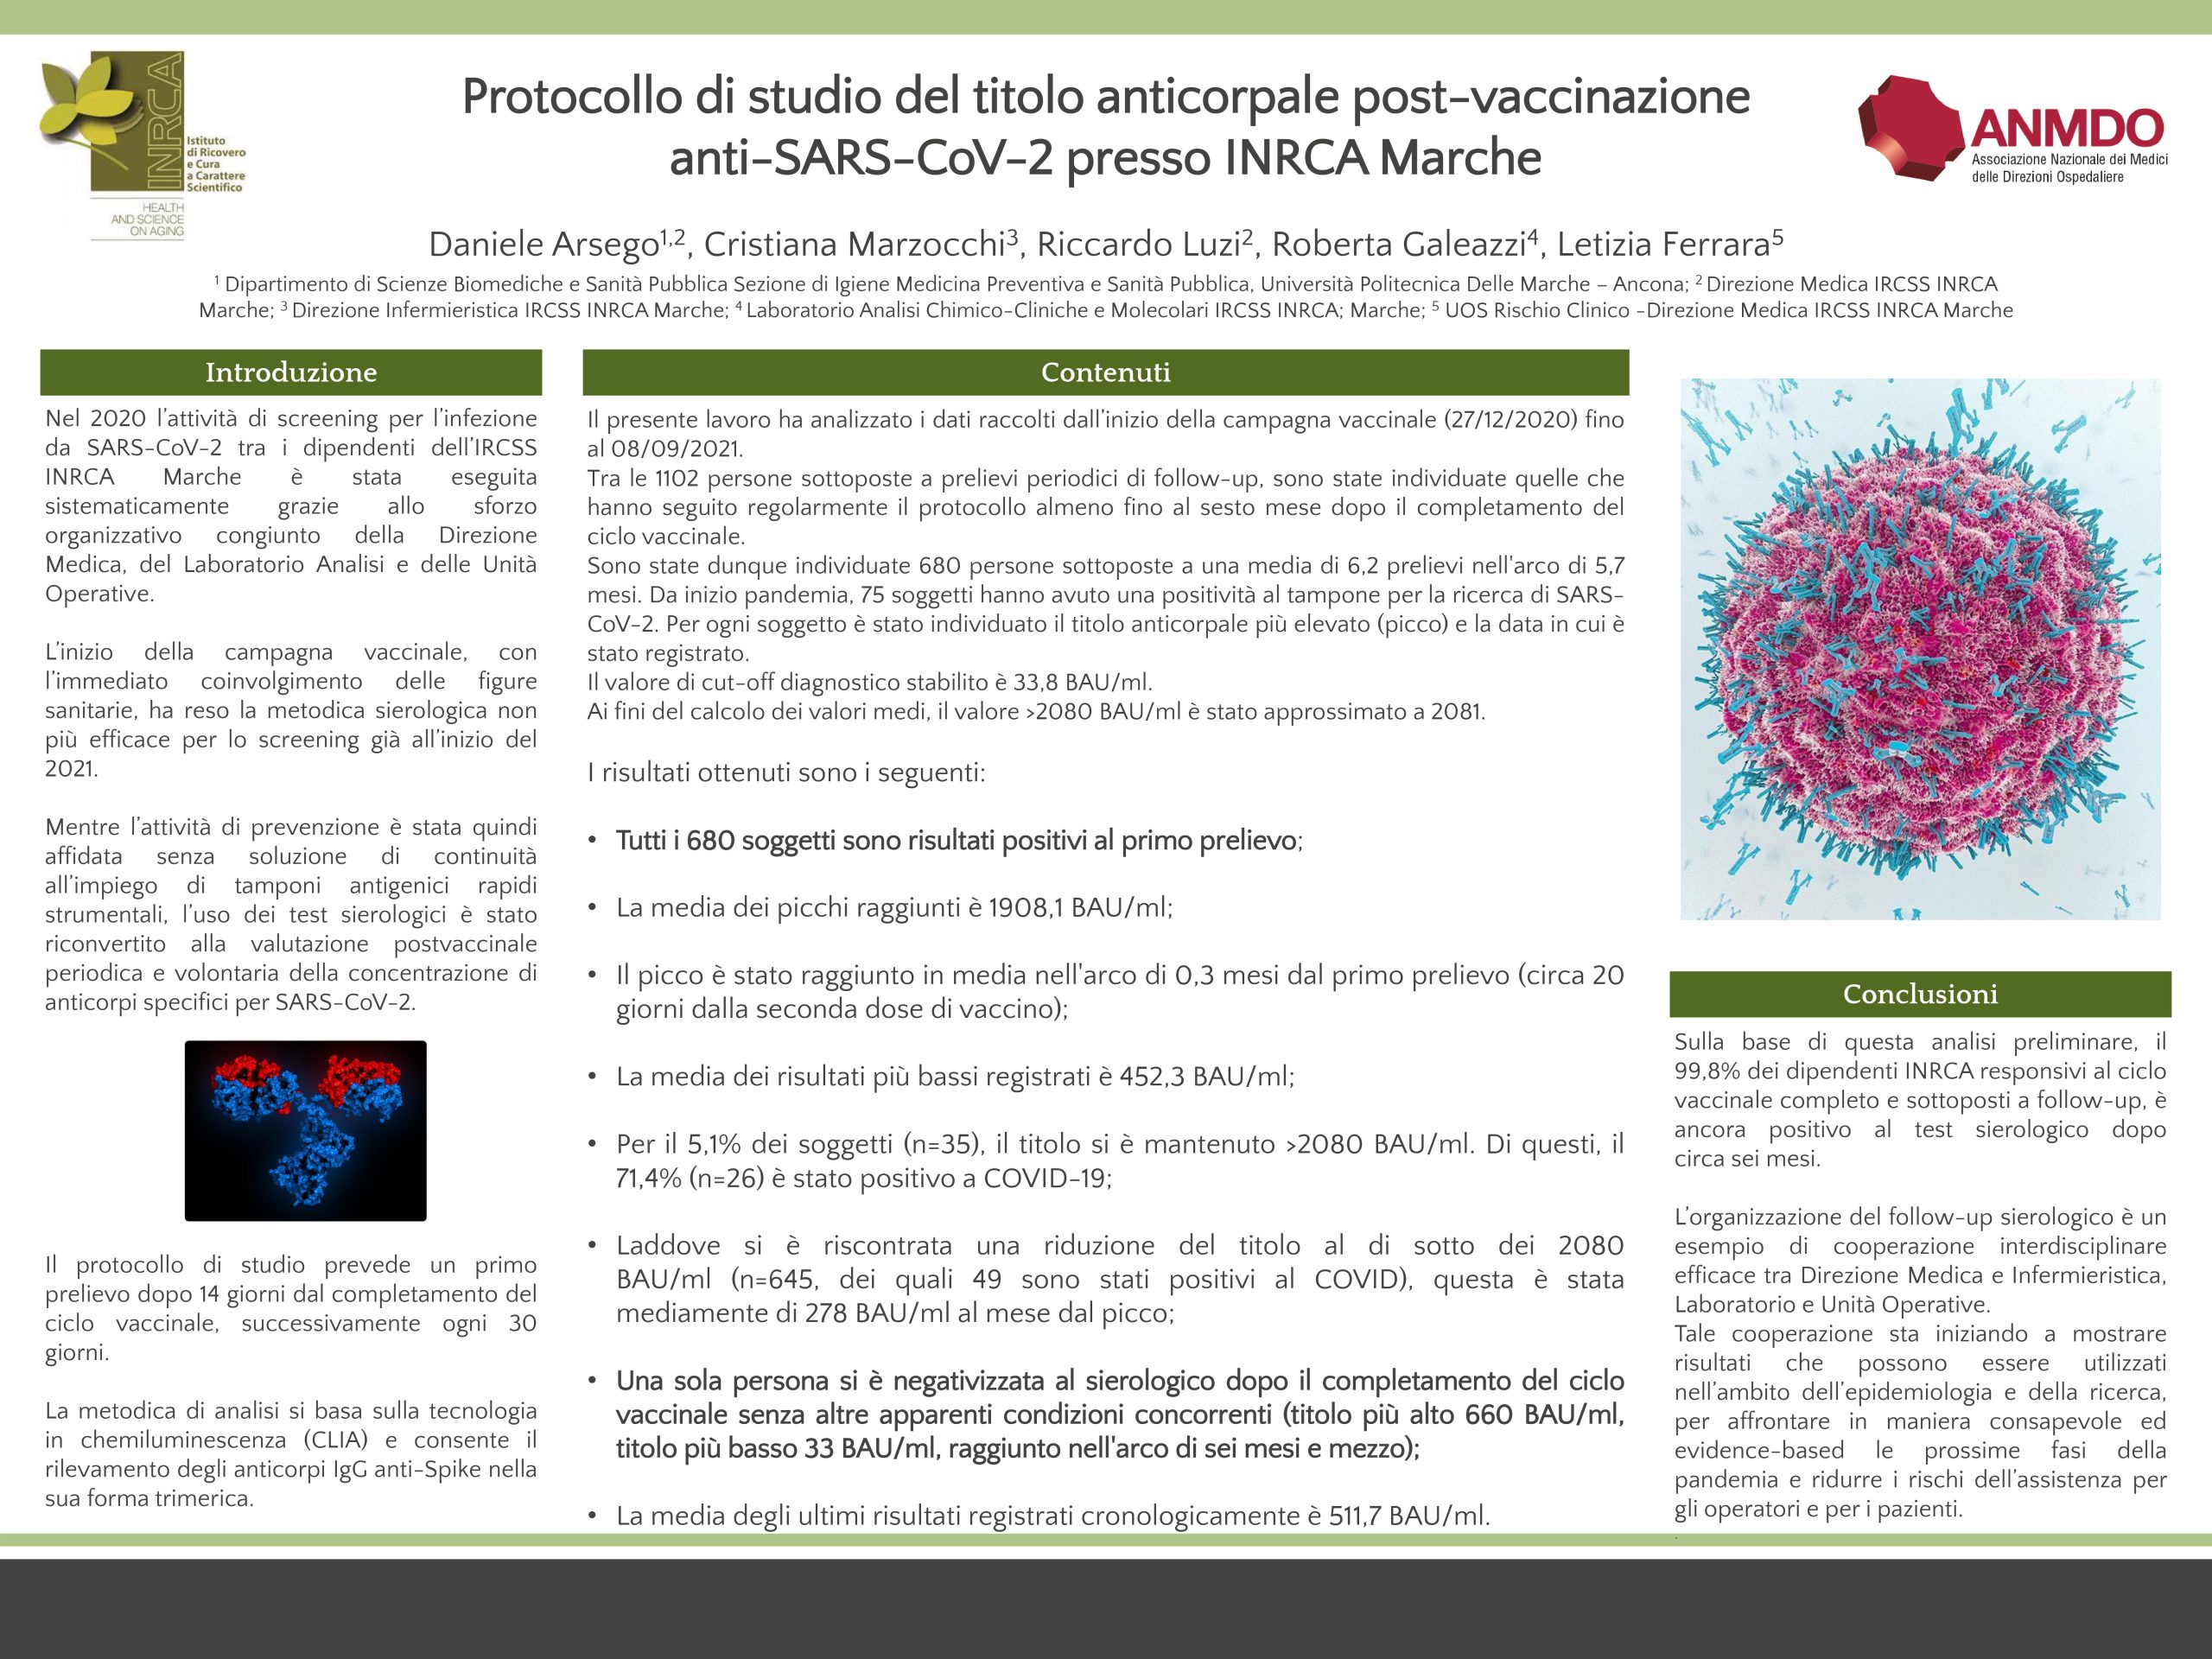 Arsego – Protocollo di studio del titolo anticorpale post-vaccinazione anti-SARS-CoV-2 presso INRCA Marche